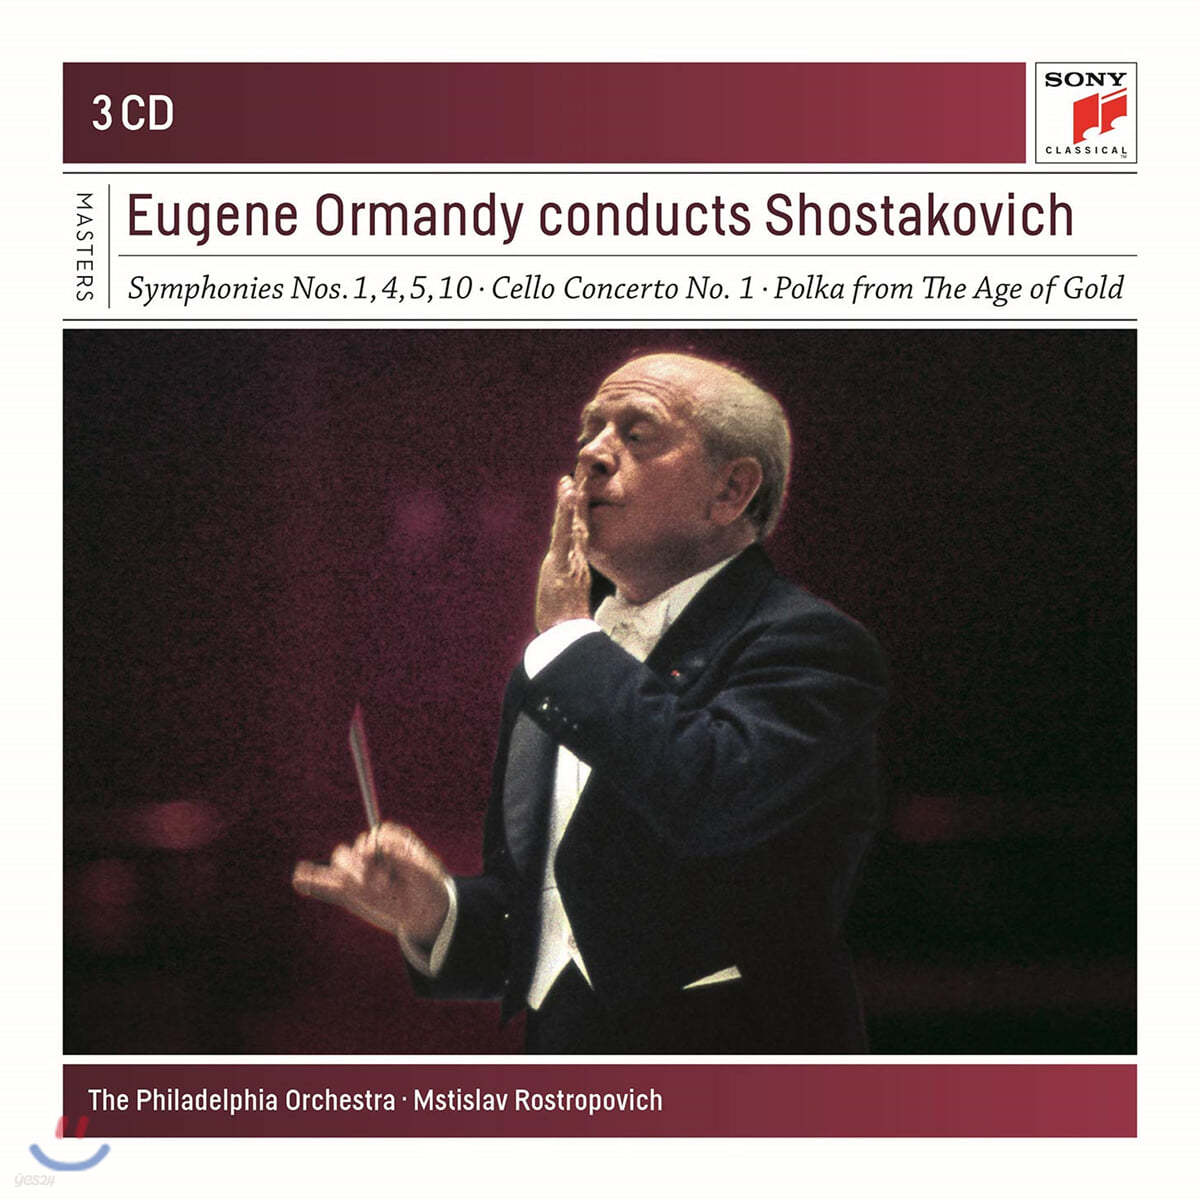 유진 오먼디가 지휘하는 쇼스타코비치 (Eugene Ormandy Conducts Shostakovich)